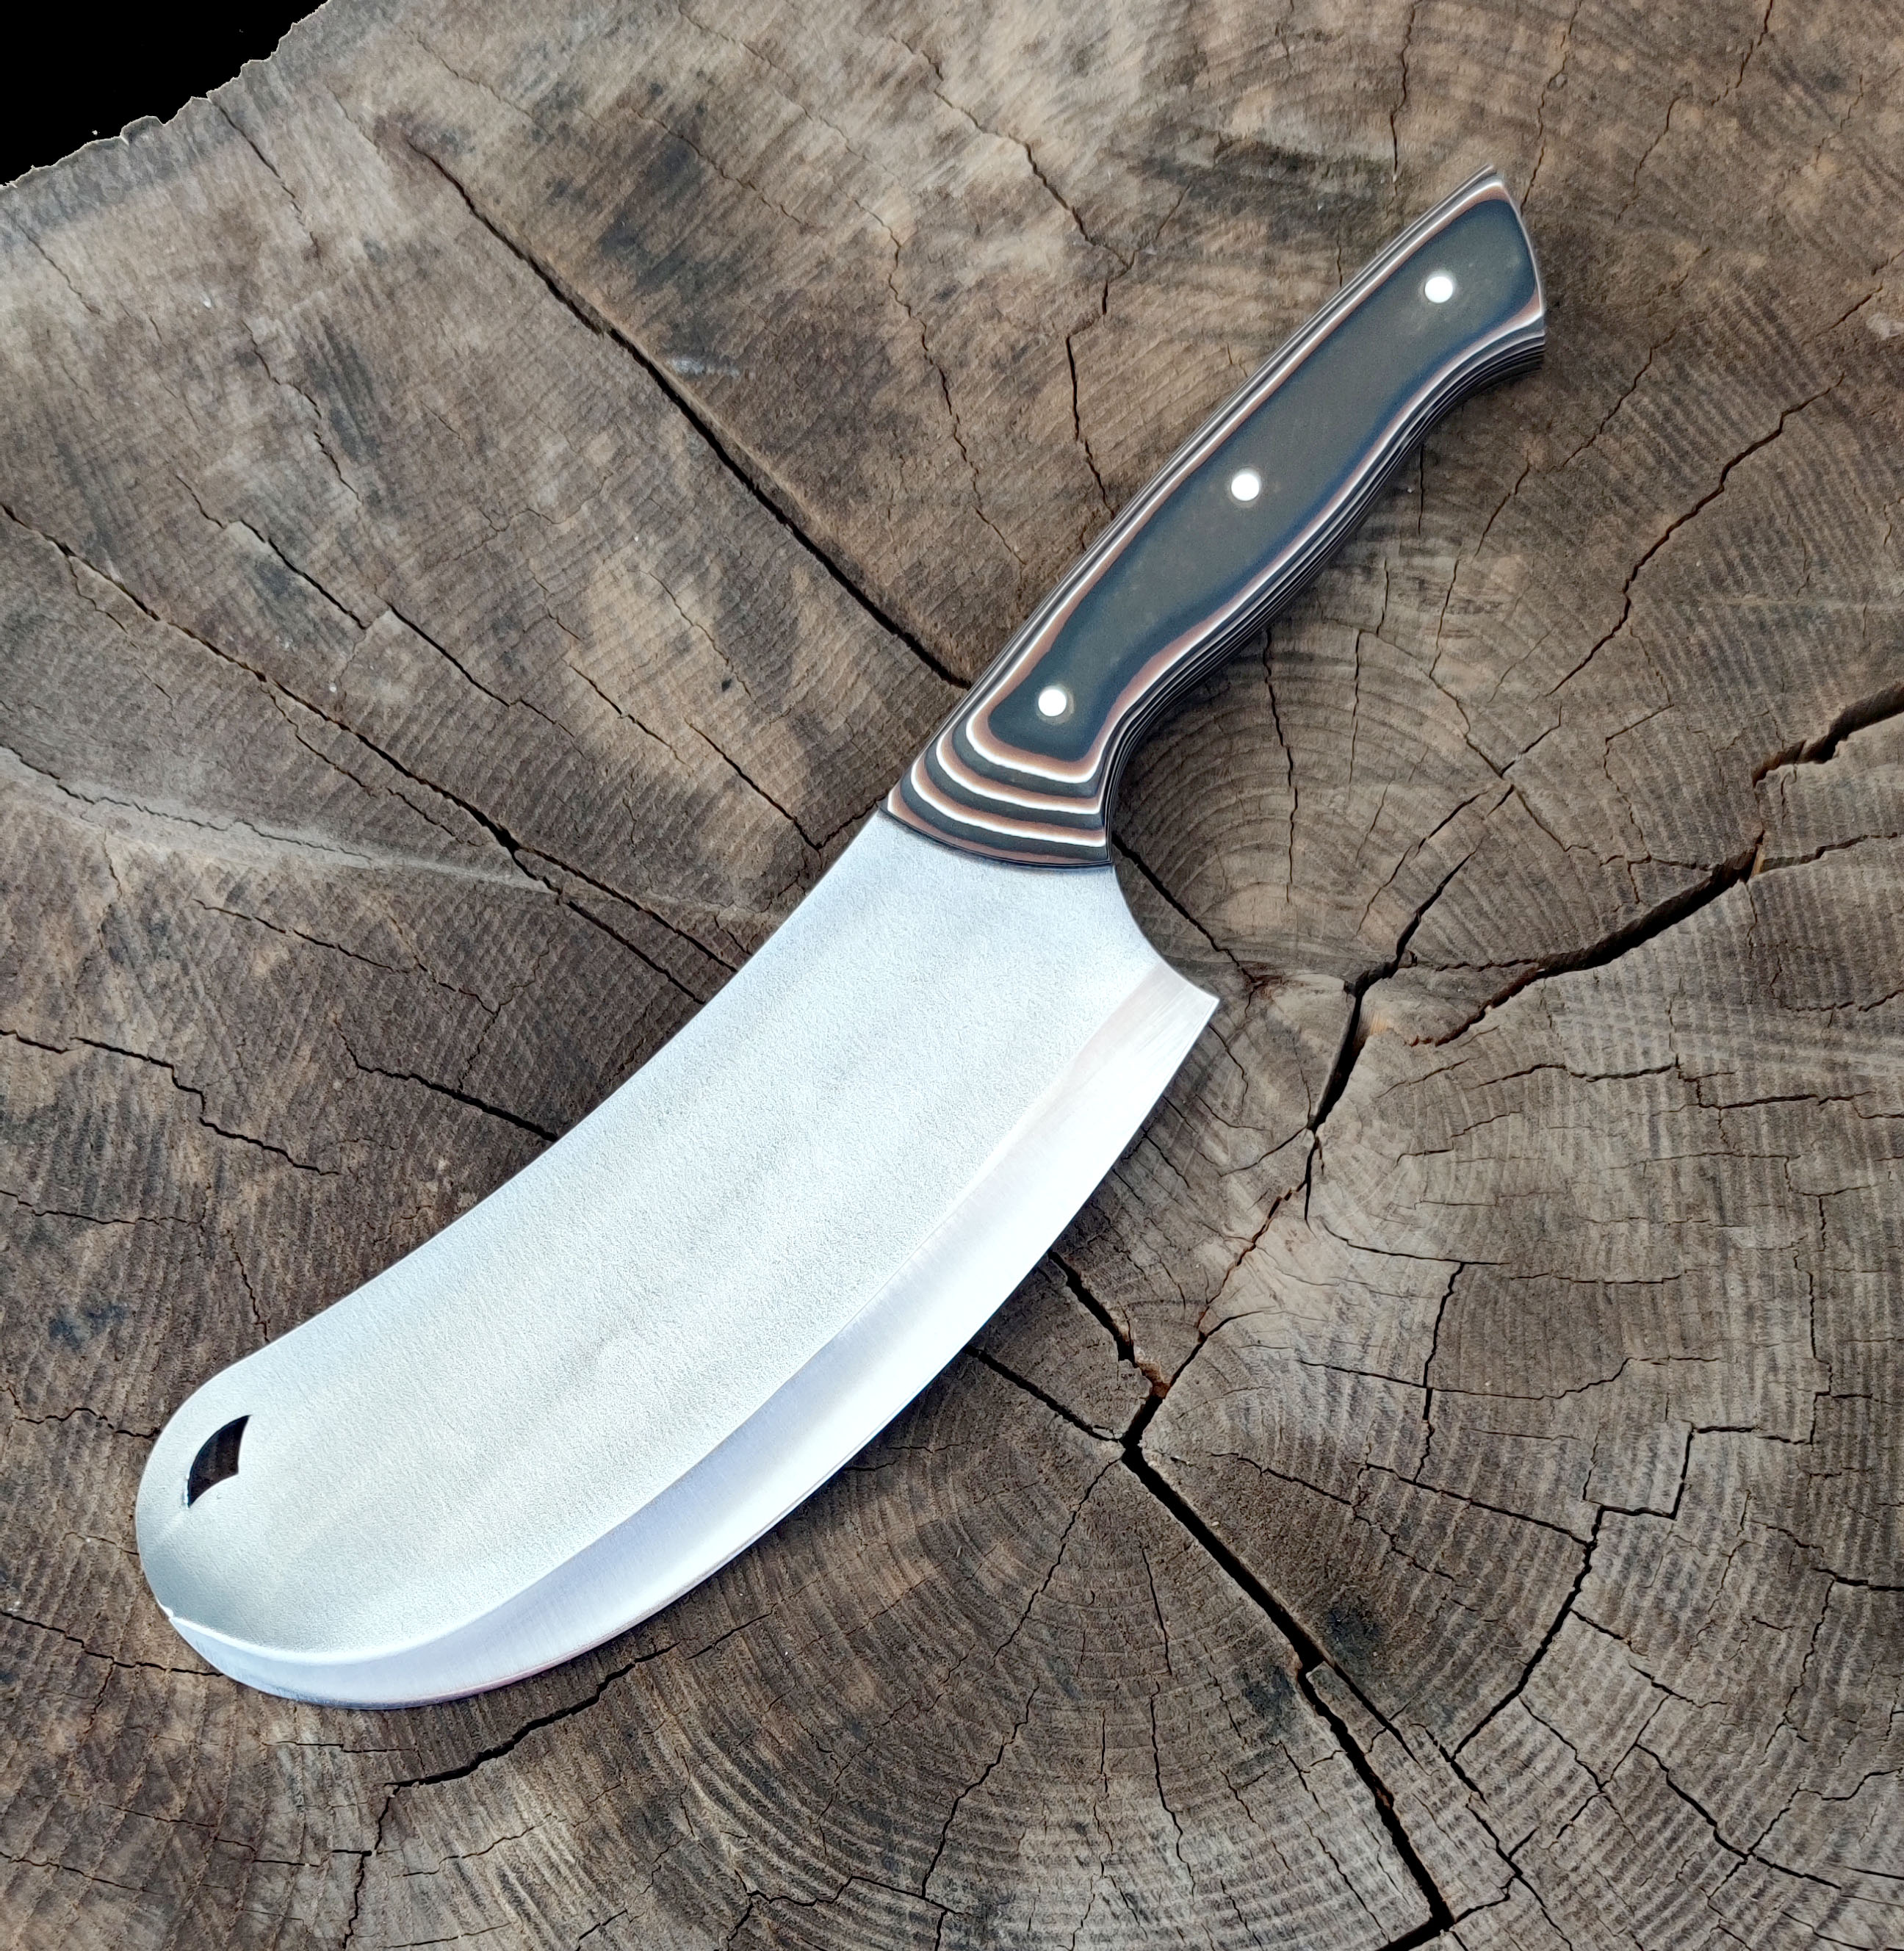 Soğan Bıçağı Zırh Kokoreç Bıçağı Pide Börek Bıçağı Hgsv050